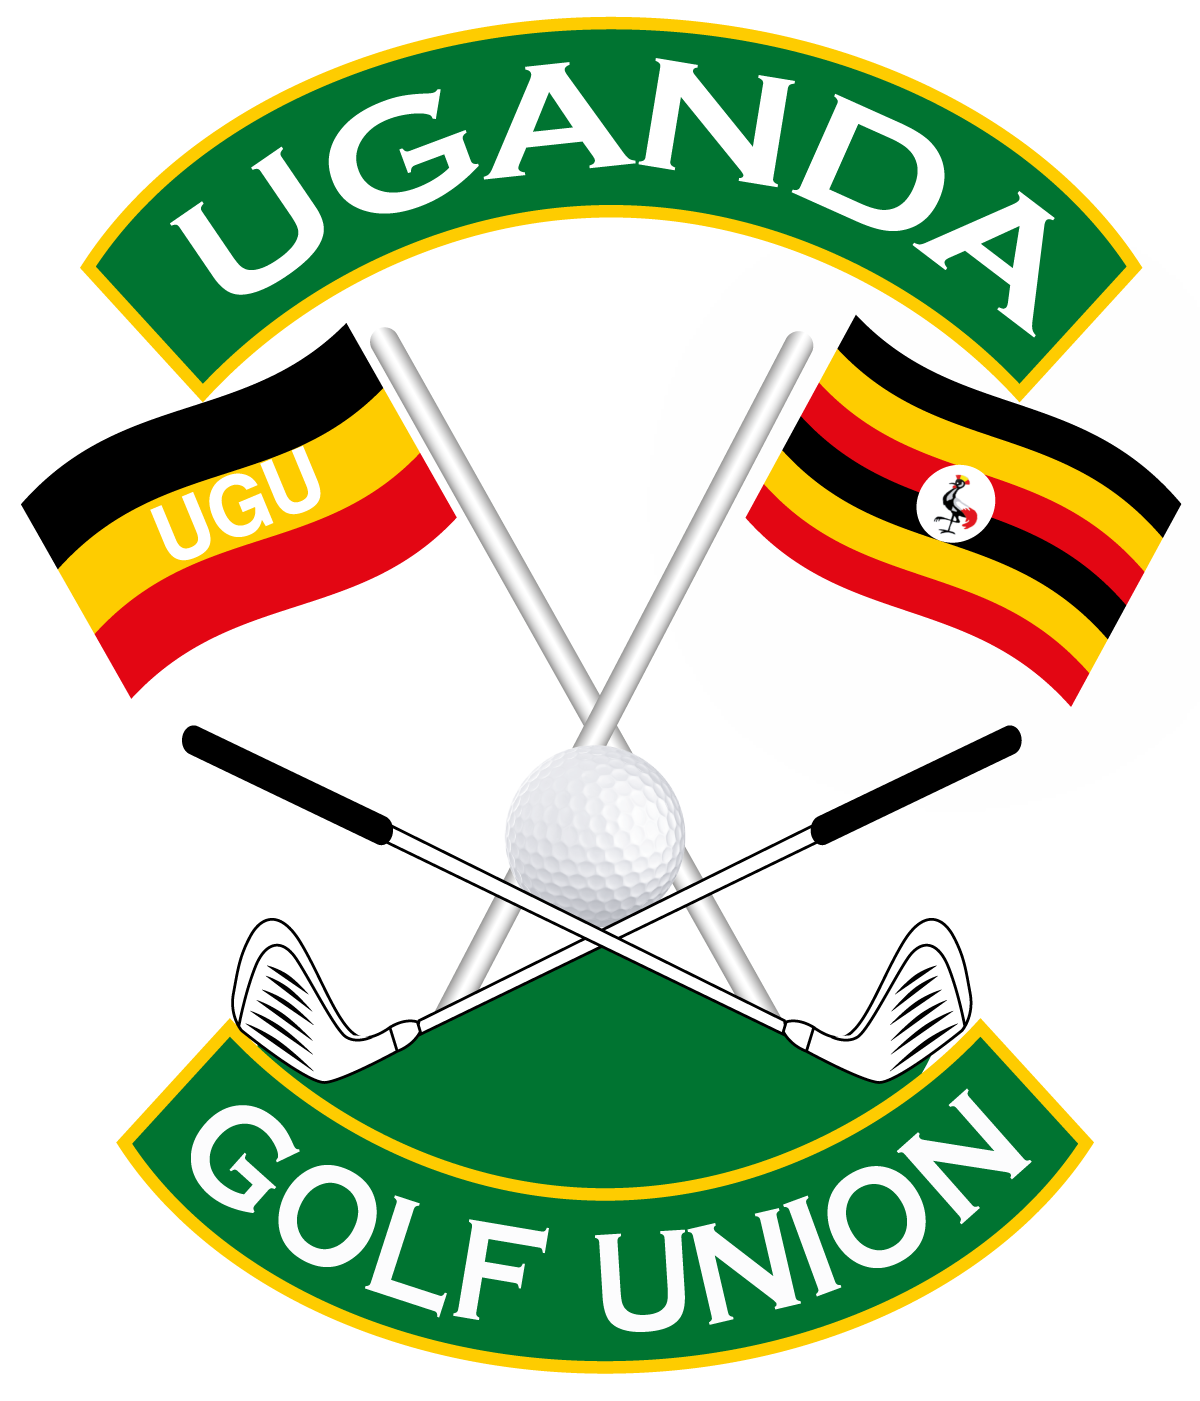 Uganda Golf Union